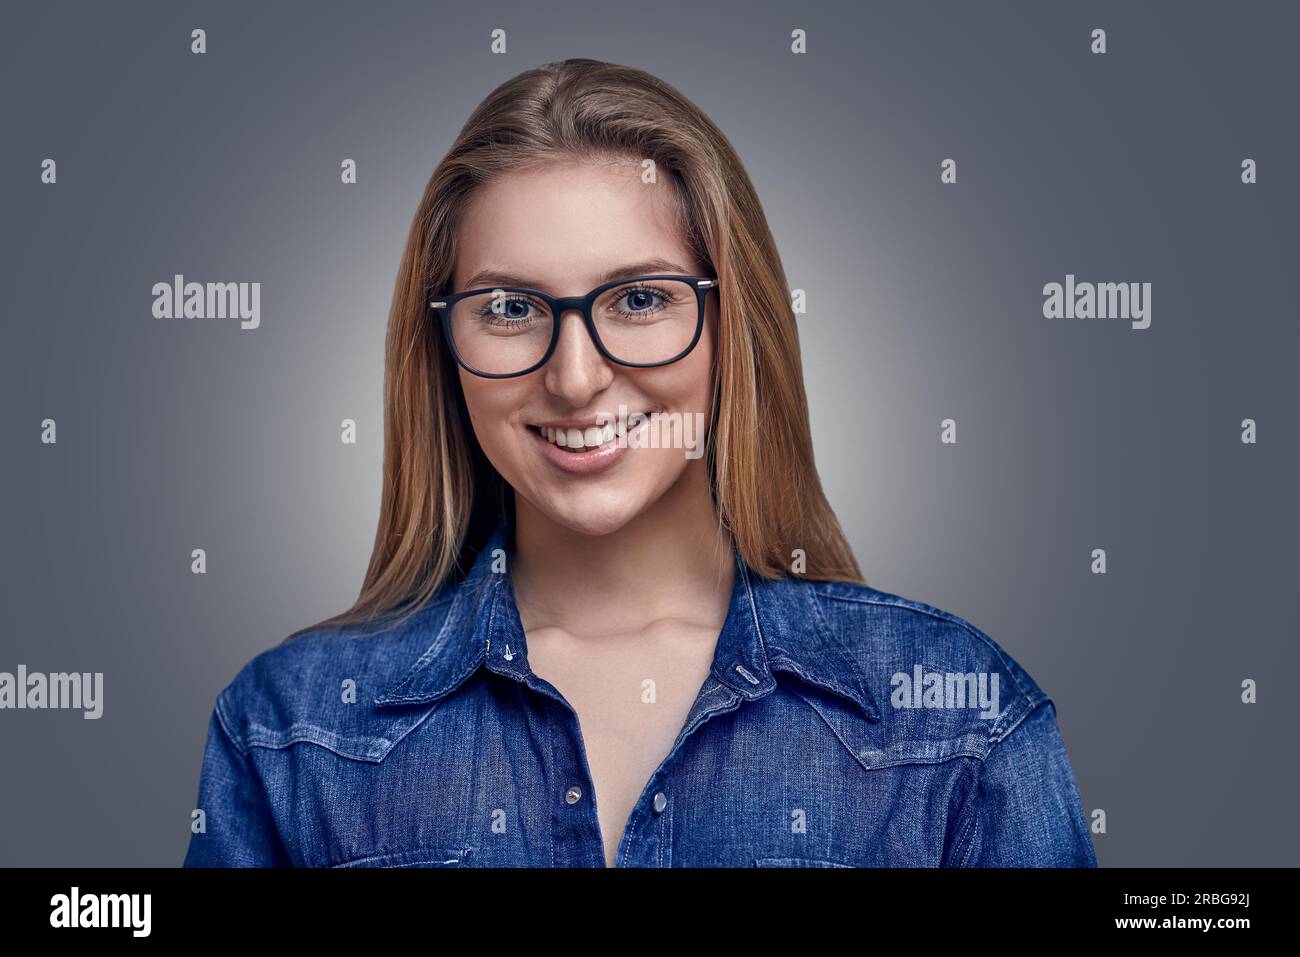 Elegante Attraente donna bionda con i capelli in un panino con gli occhiali a sorridere alla telecamera Foto Stock